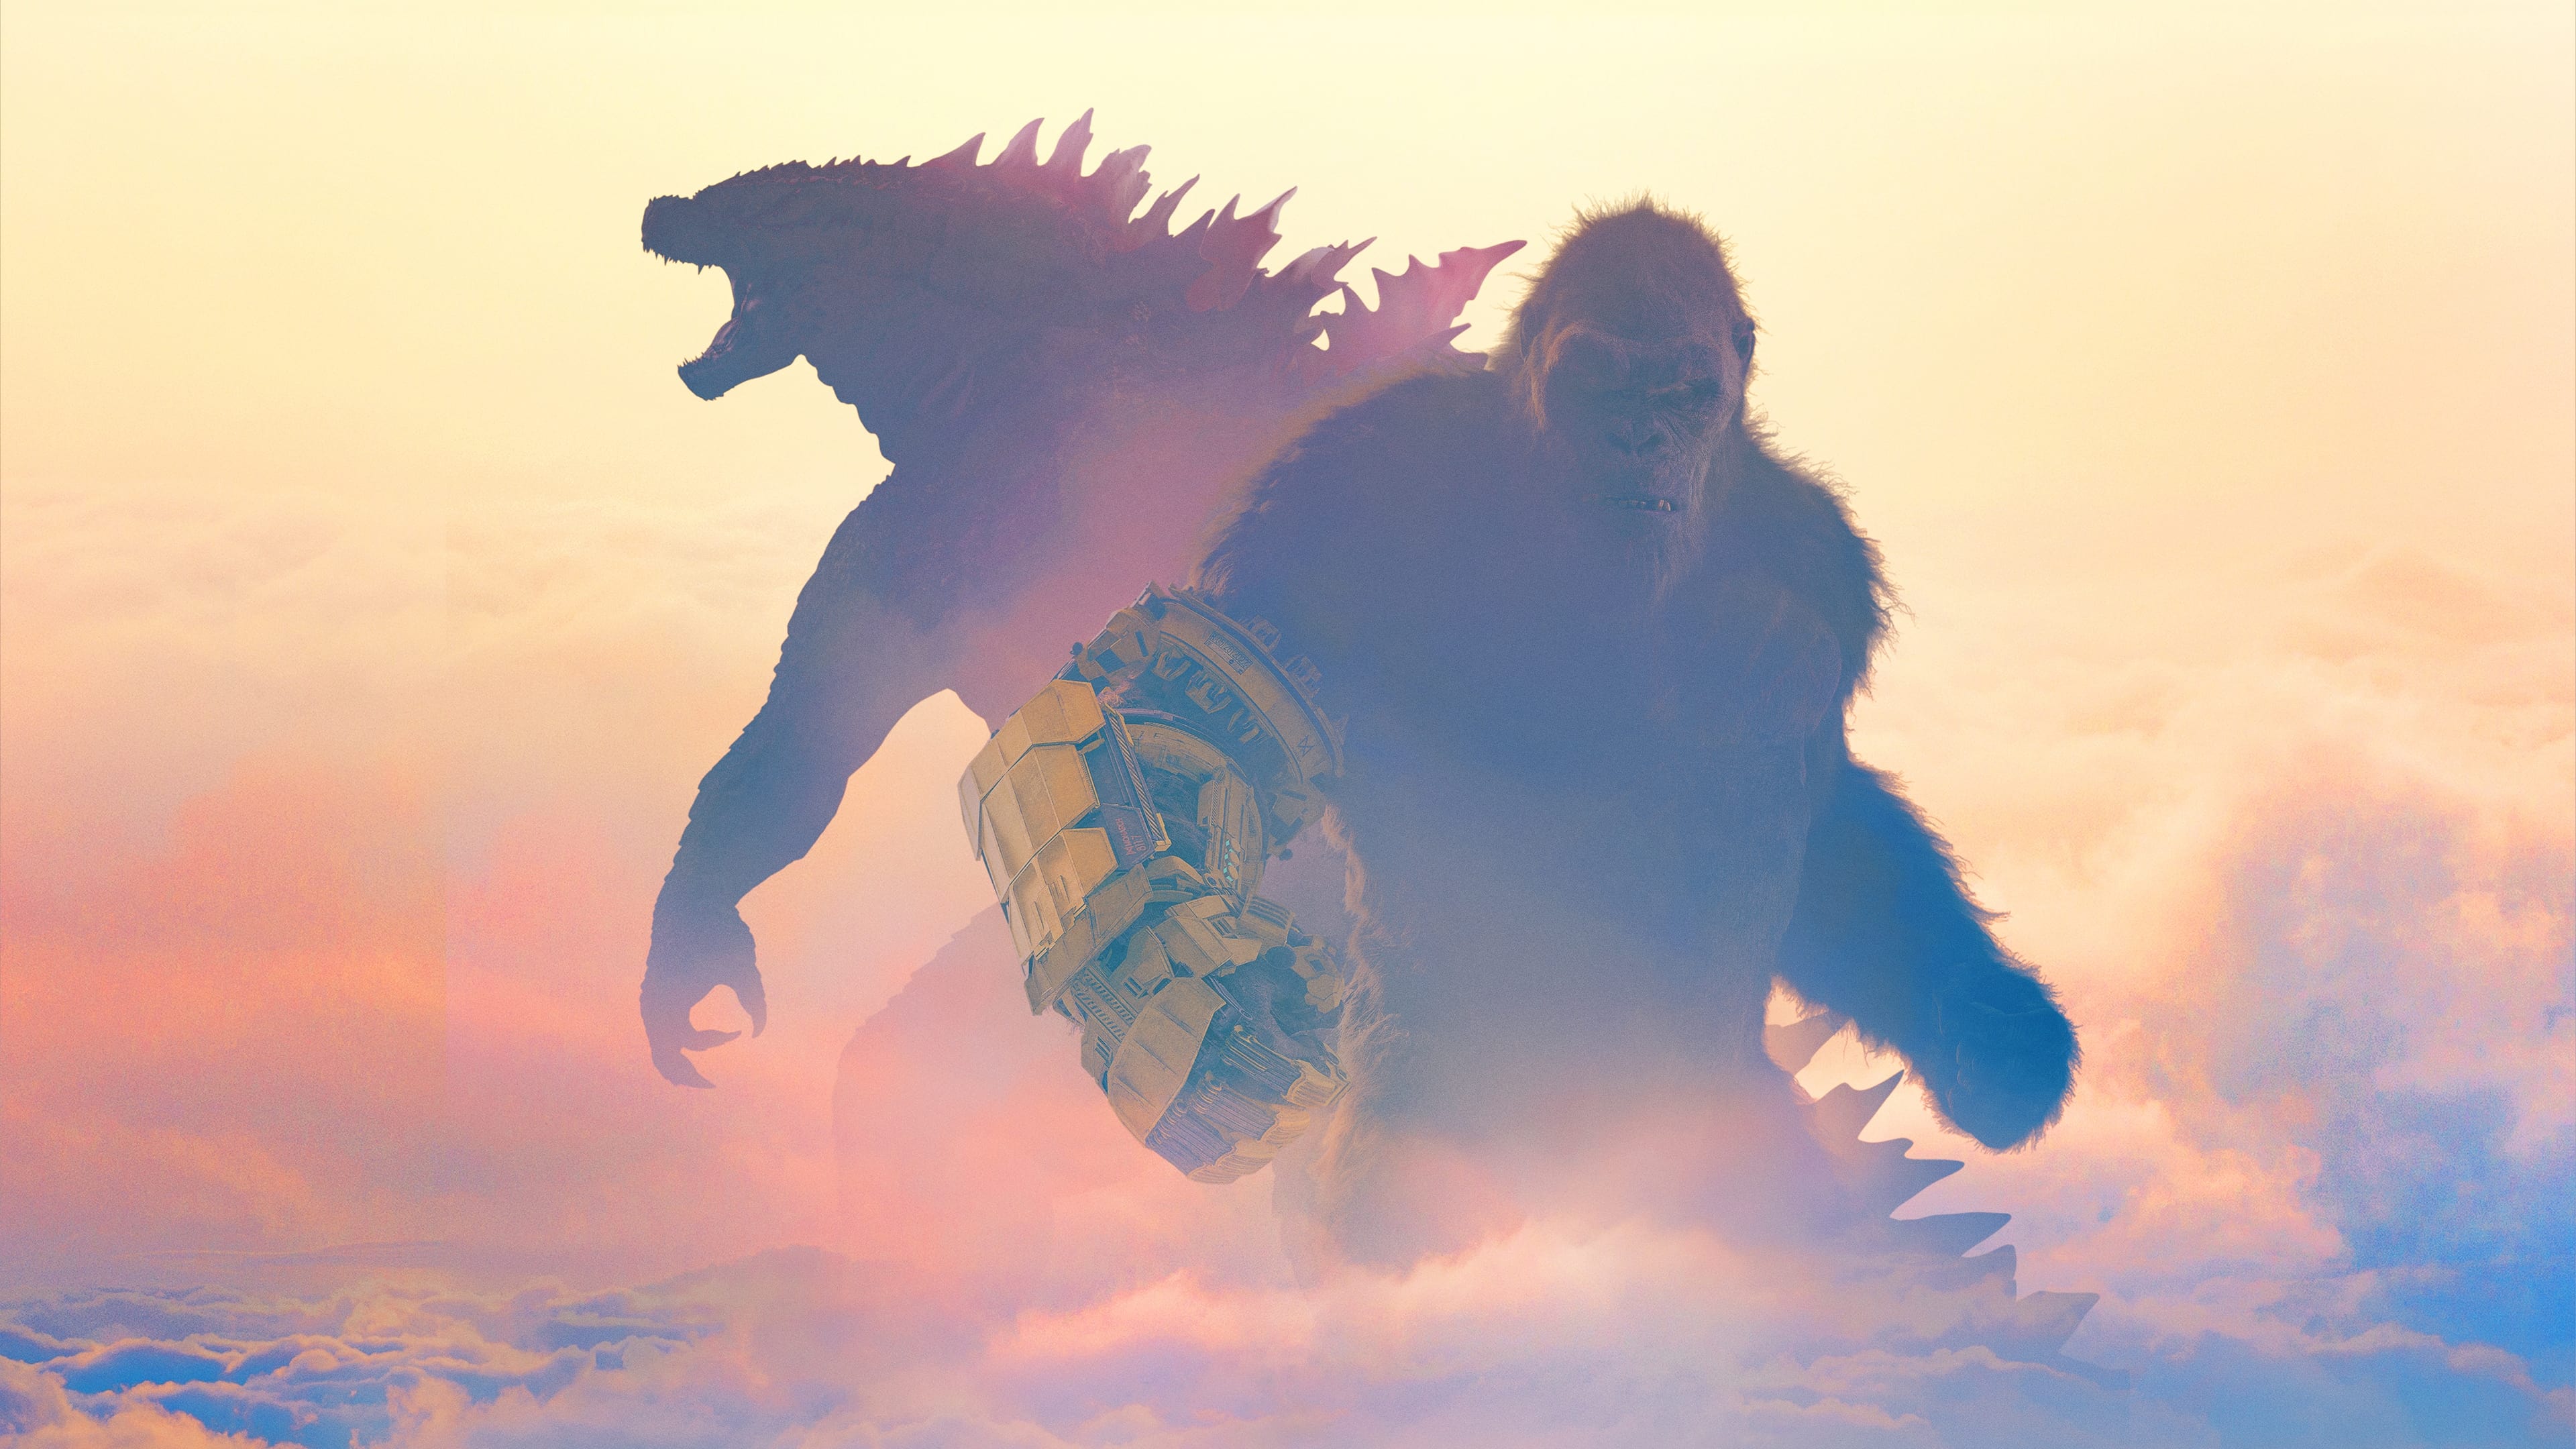 Godzilla y Kong: El nuevo imperio (2024)